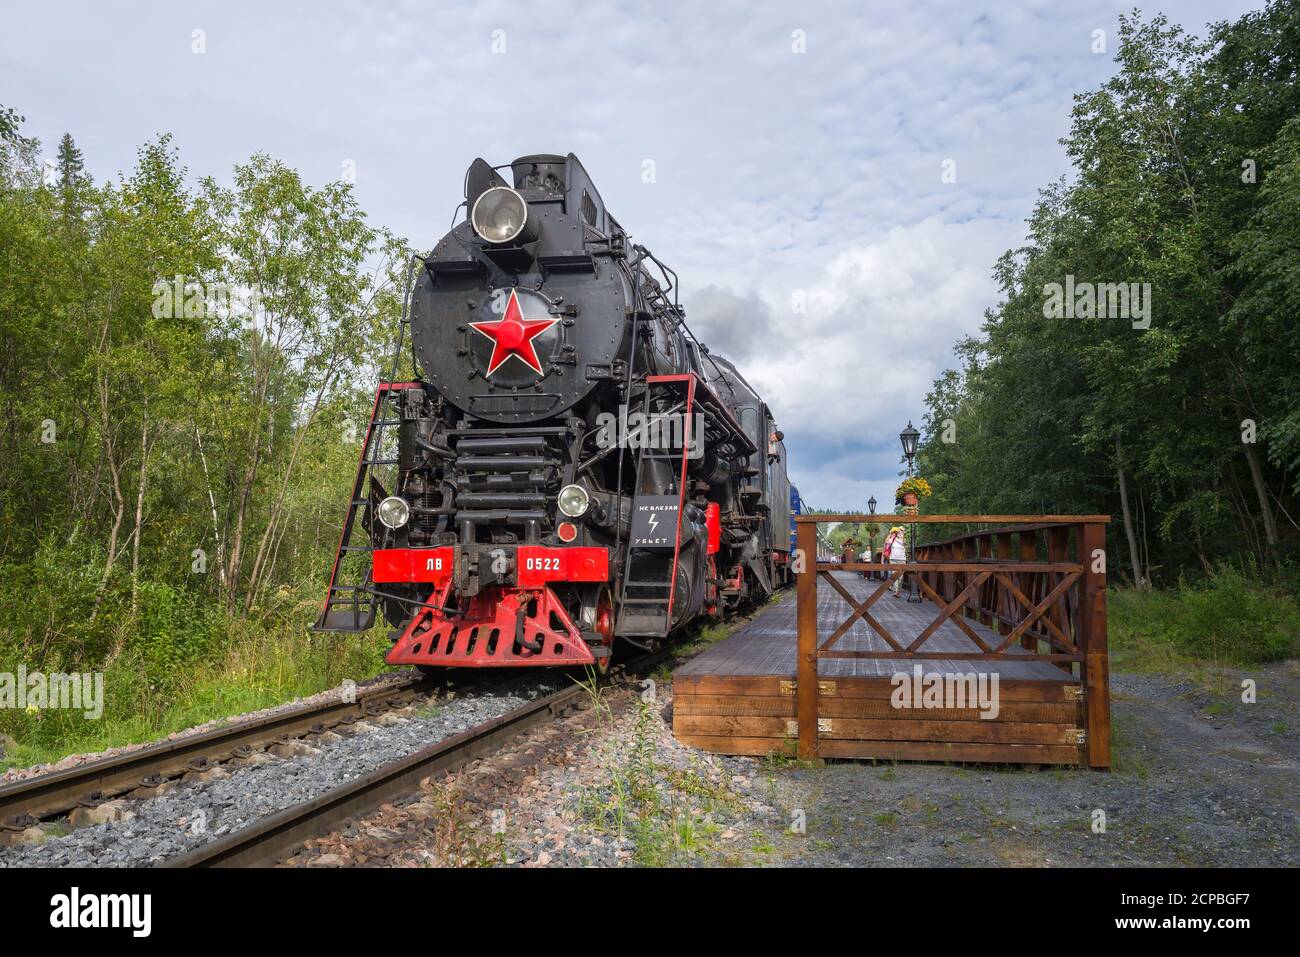 RUSKEALA, RUSSIE - 15 AOÛT 2020 : locomotive à vapeur soviétique LV-0522 et train rétro Ruskealsky Express à l'tablier du Parc de la montagne Ruskeala Banque D'Images